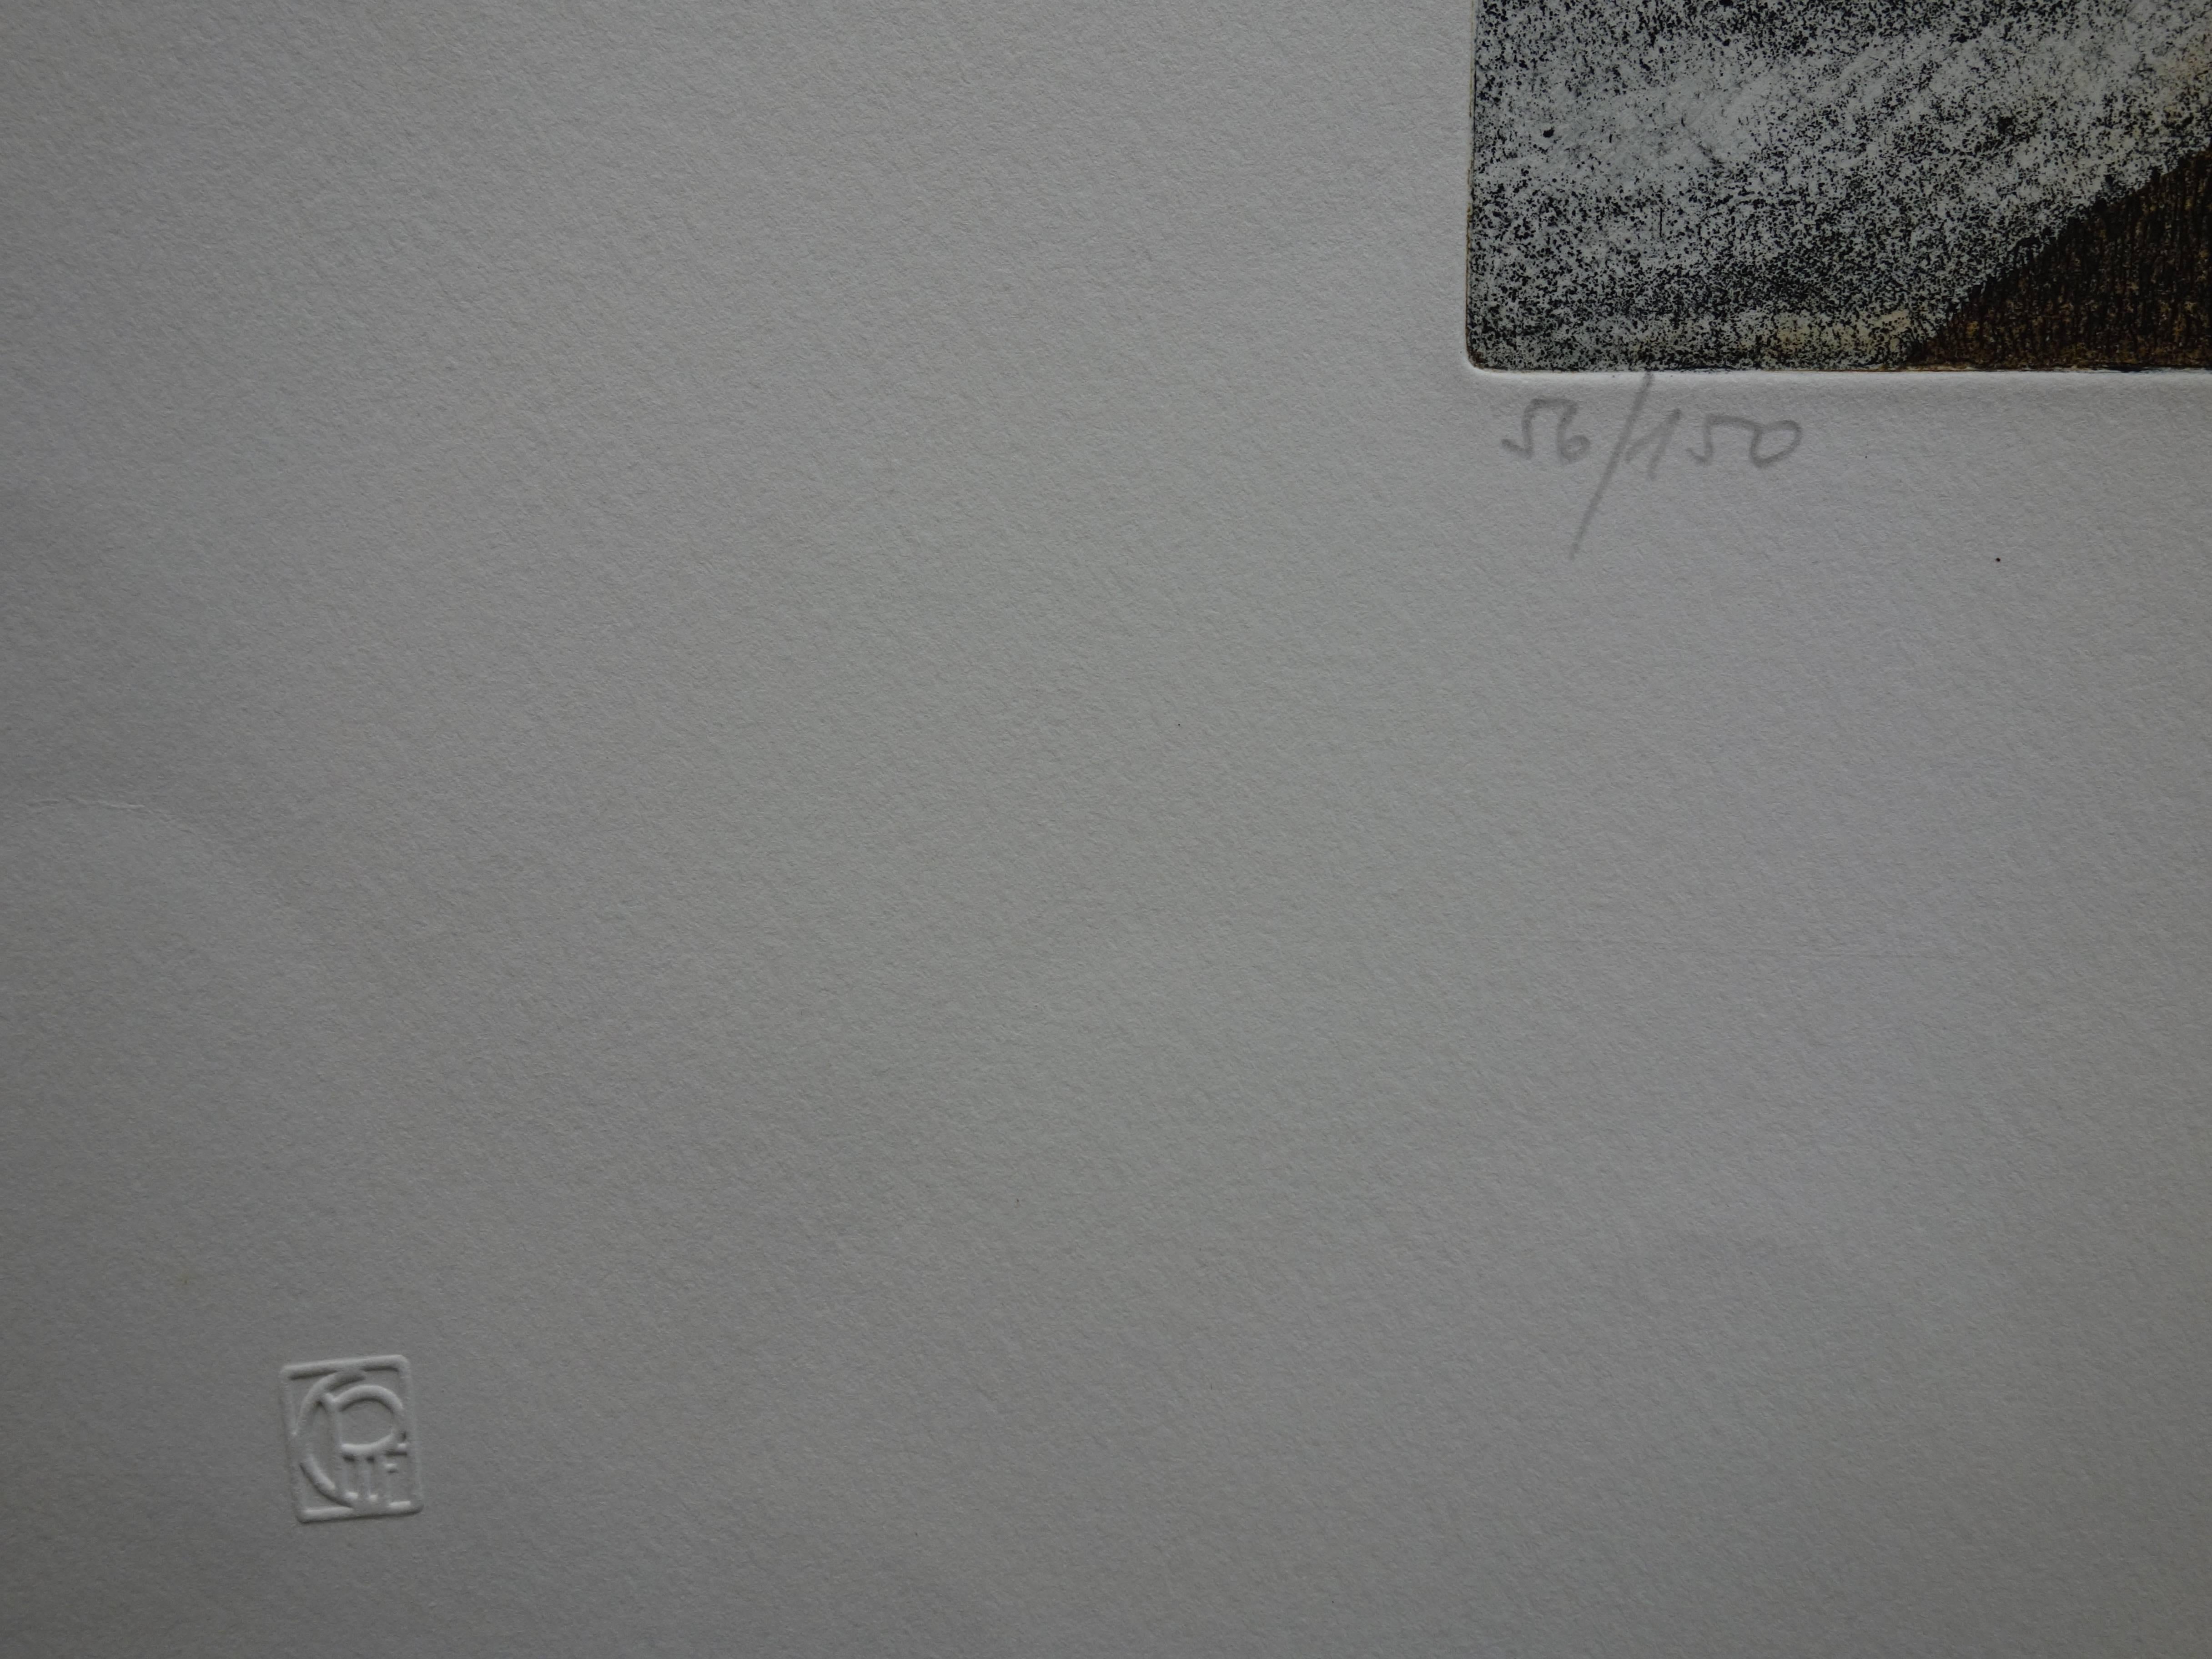 Lars BO
Die andere Seite der Mauer

Original Radierung mit Aquatinta
Mit Bleistift signiert
Nummeriert / 150 Ex
Auf Pergament 50 x 65 cm (ca. 20 x 26 inch)

Sehr guter Zustand, rechter Rand leicht geknickt (siehe Bilder)